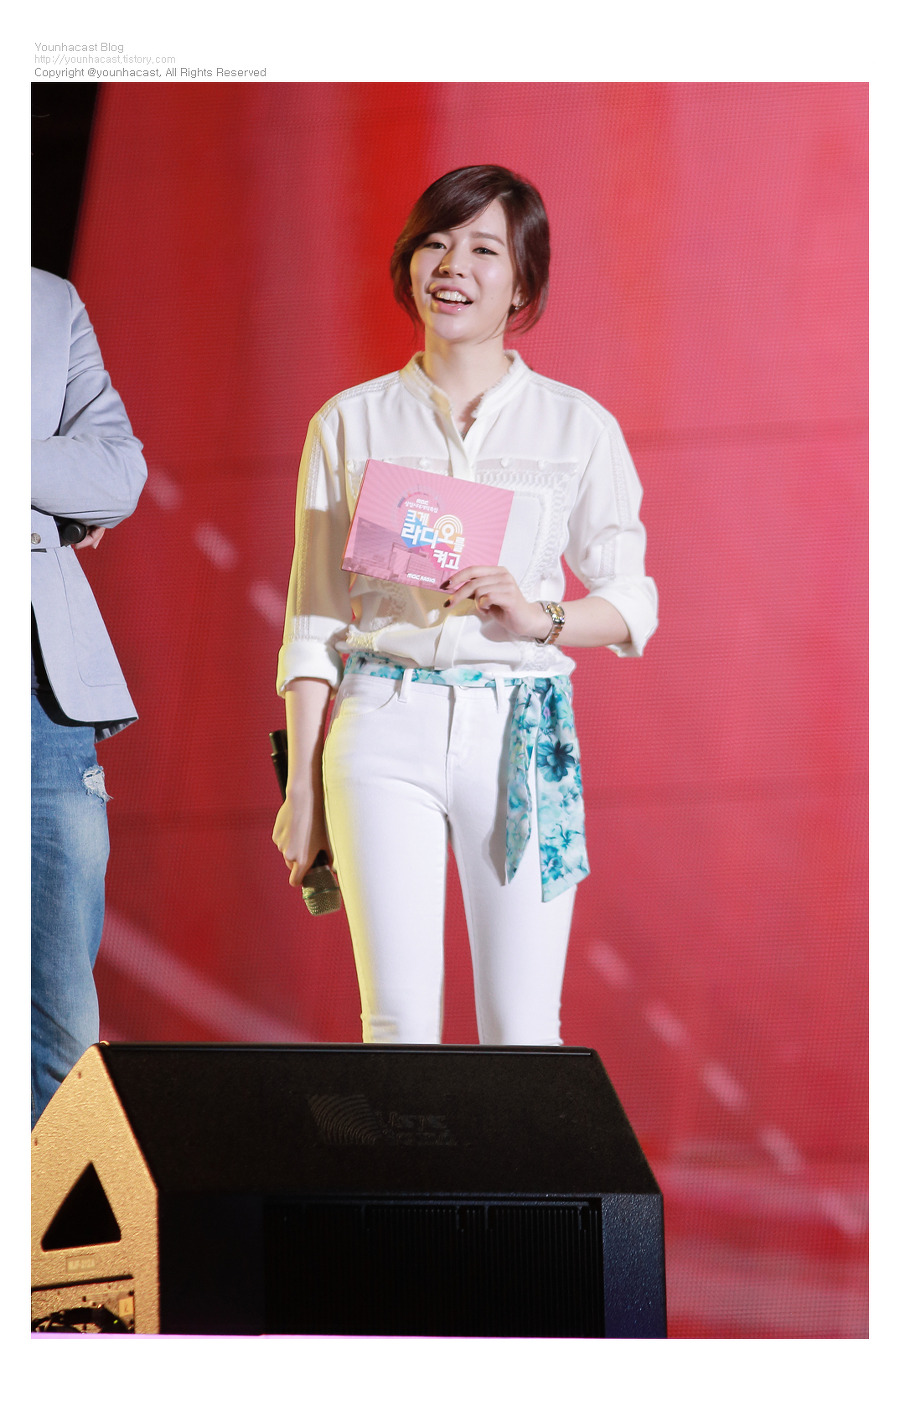 [PIC][04-09-2014]Sunny tham dự chương trình "Sangam MBC Radio" với tư cách là MC vào tối nay - Page 2 25633939540B114E30CC69